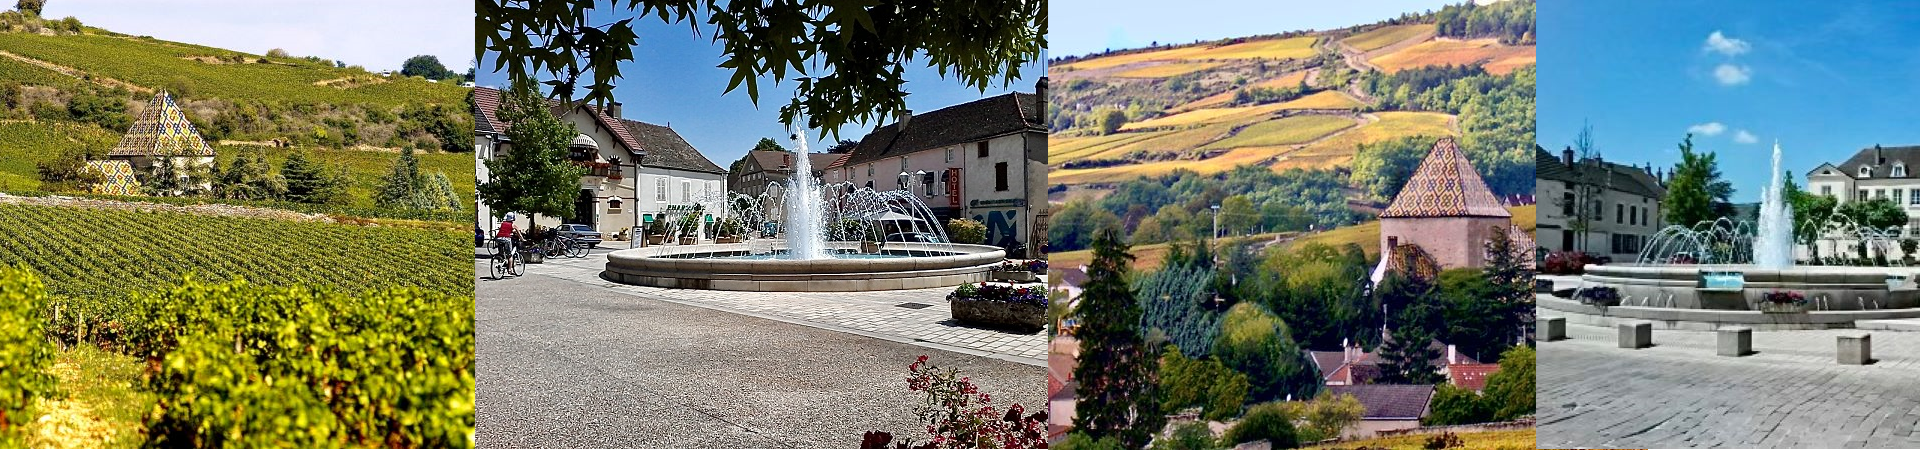 Banniere Santenay, ville d'eau et de vin